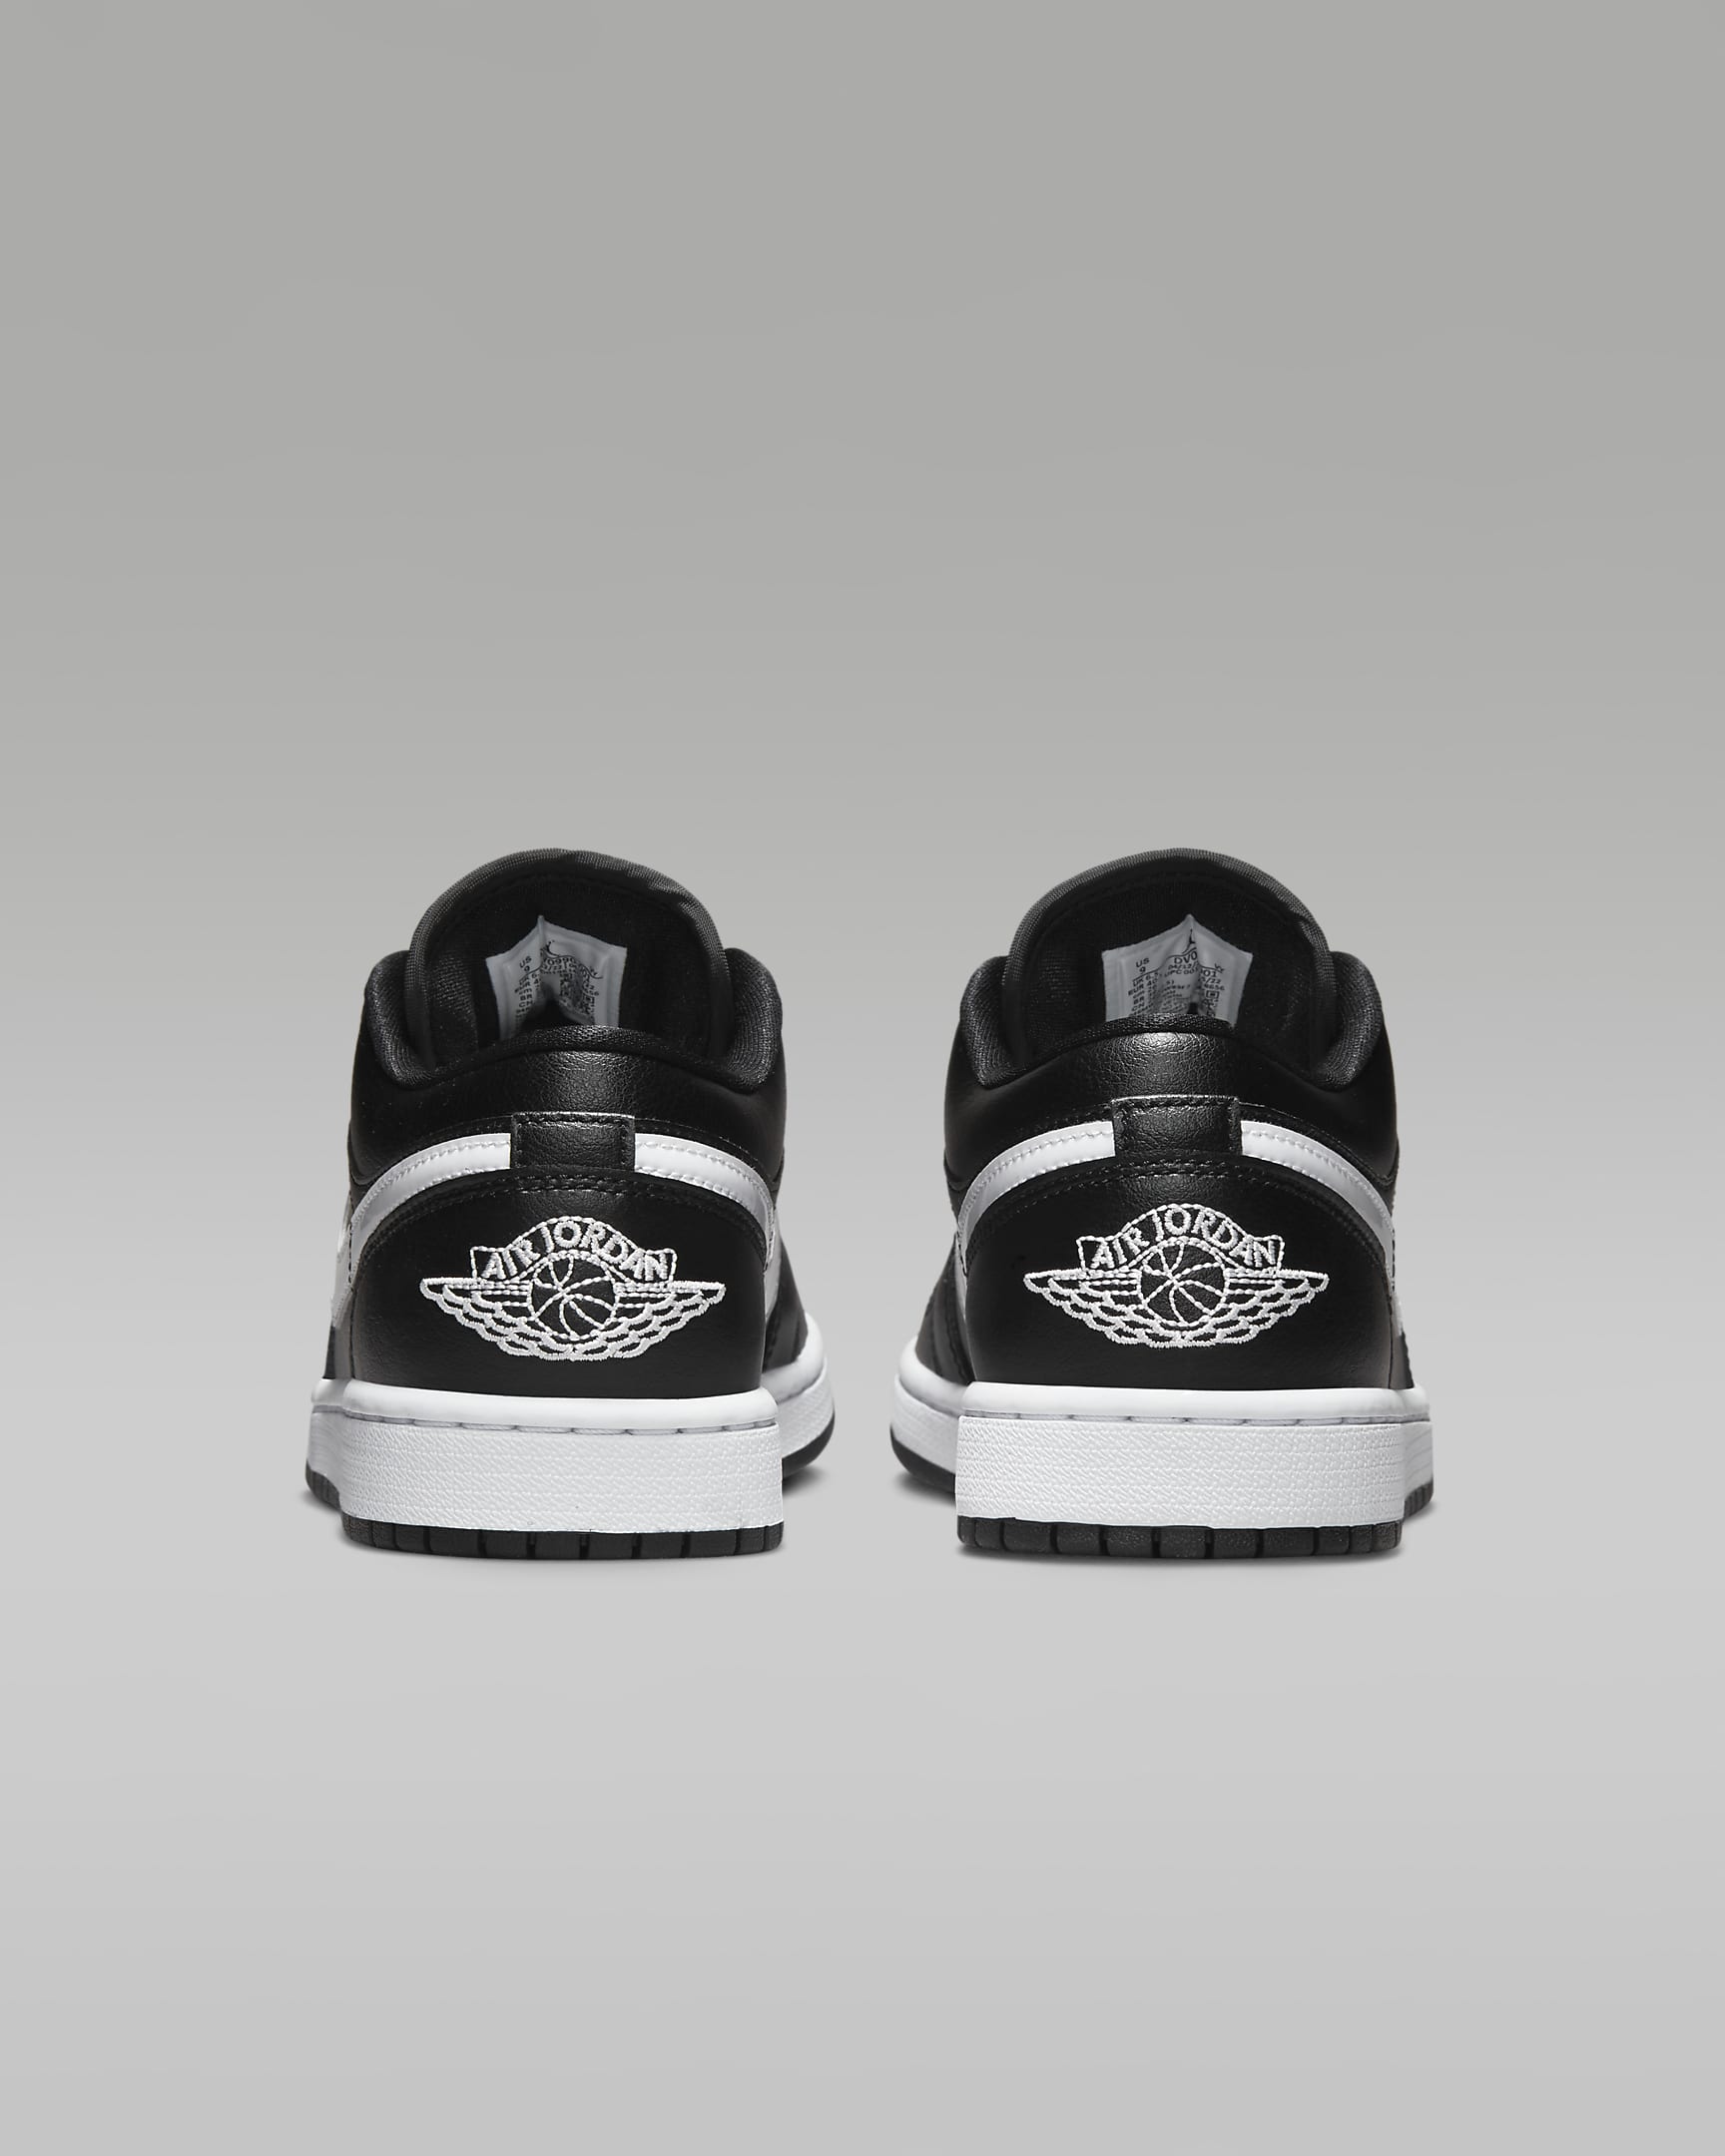 Air Jordan 1 Low Women's Shoes - Black/Black/White